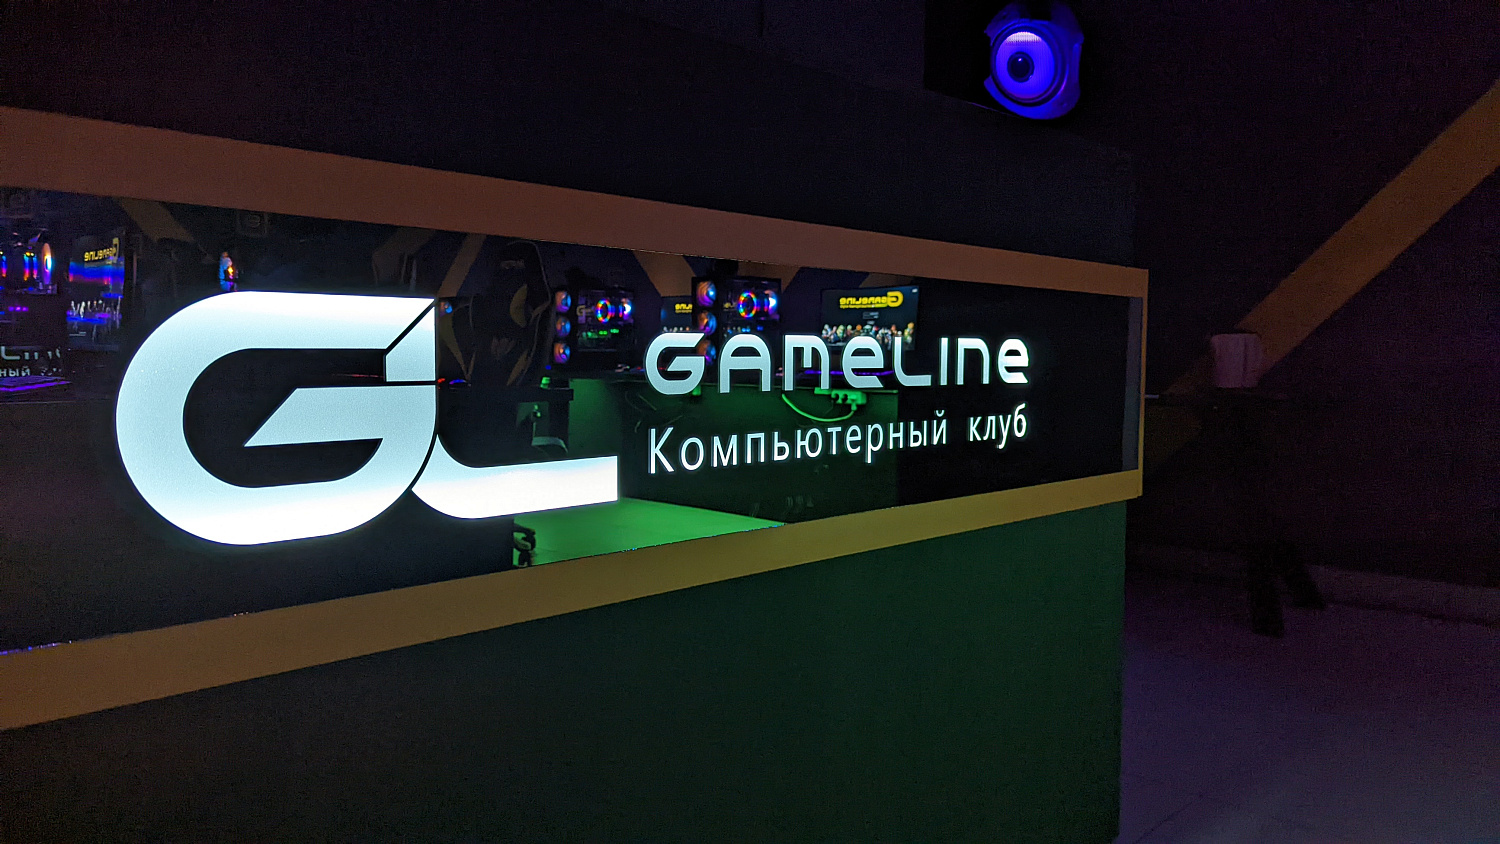 Открытие компьютерного клуба Gameline в г. Жлобин